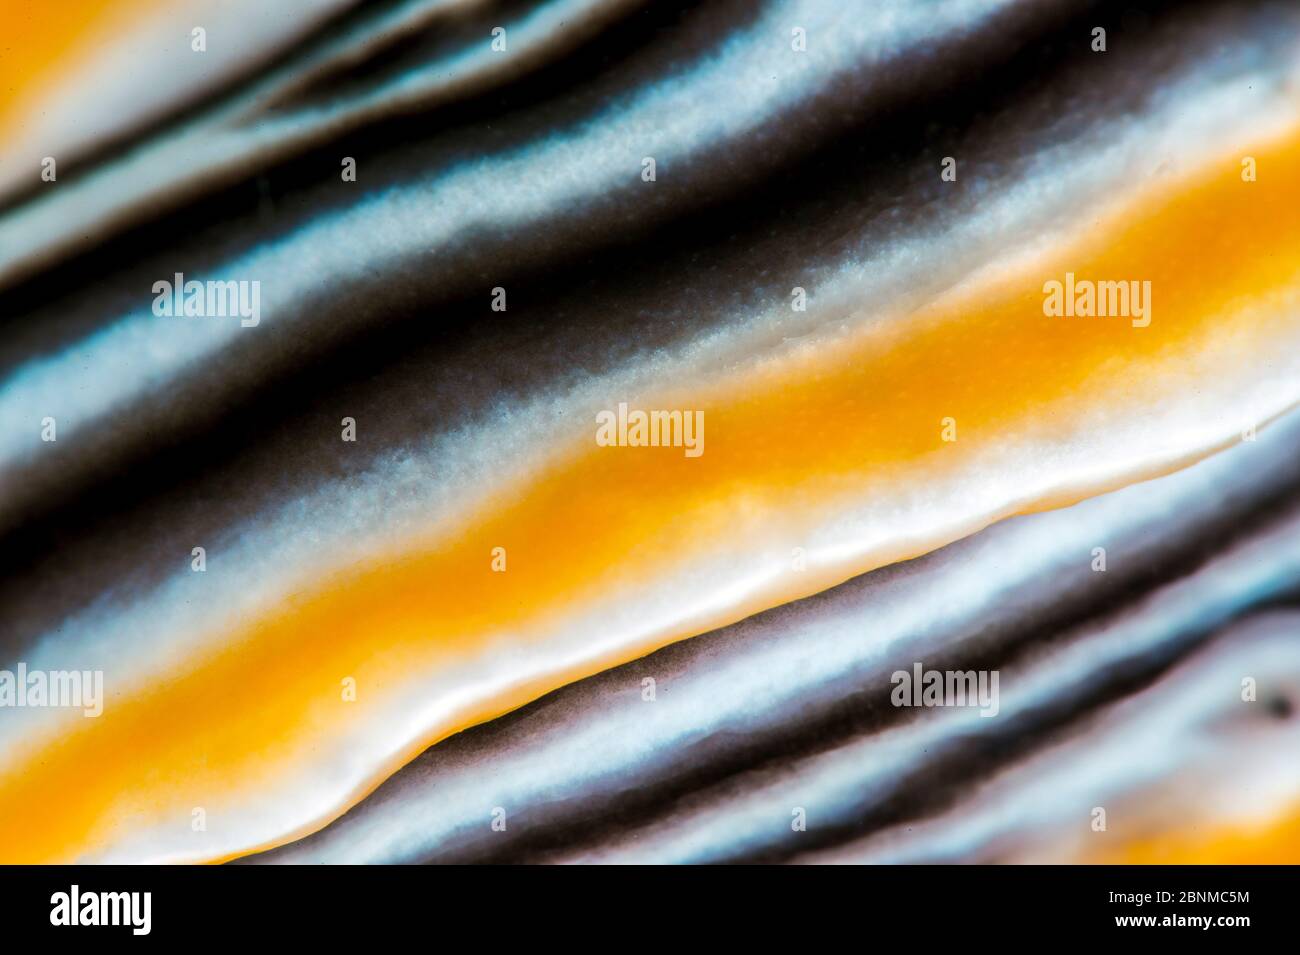 Nacktschnecken (Chromodoris magnifica) mit hoher Vergrößerung eines Randbandes, Anilao, Batangas, Luzon, Philippinen, Pazifischer Ozean. Stockfoto